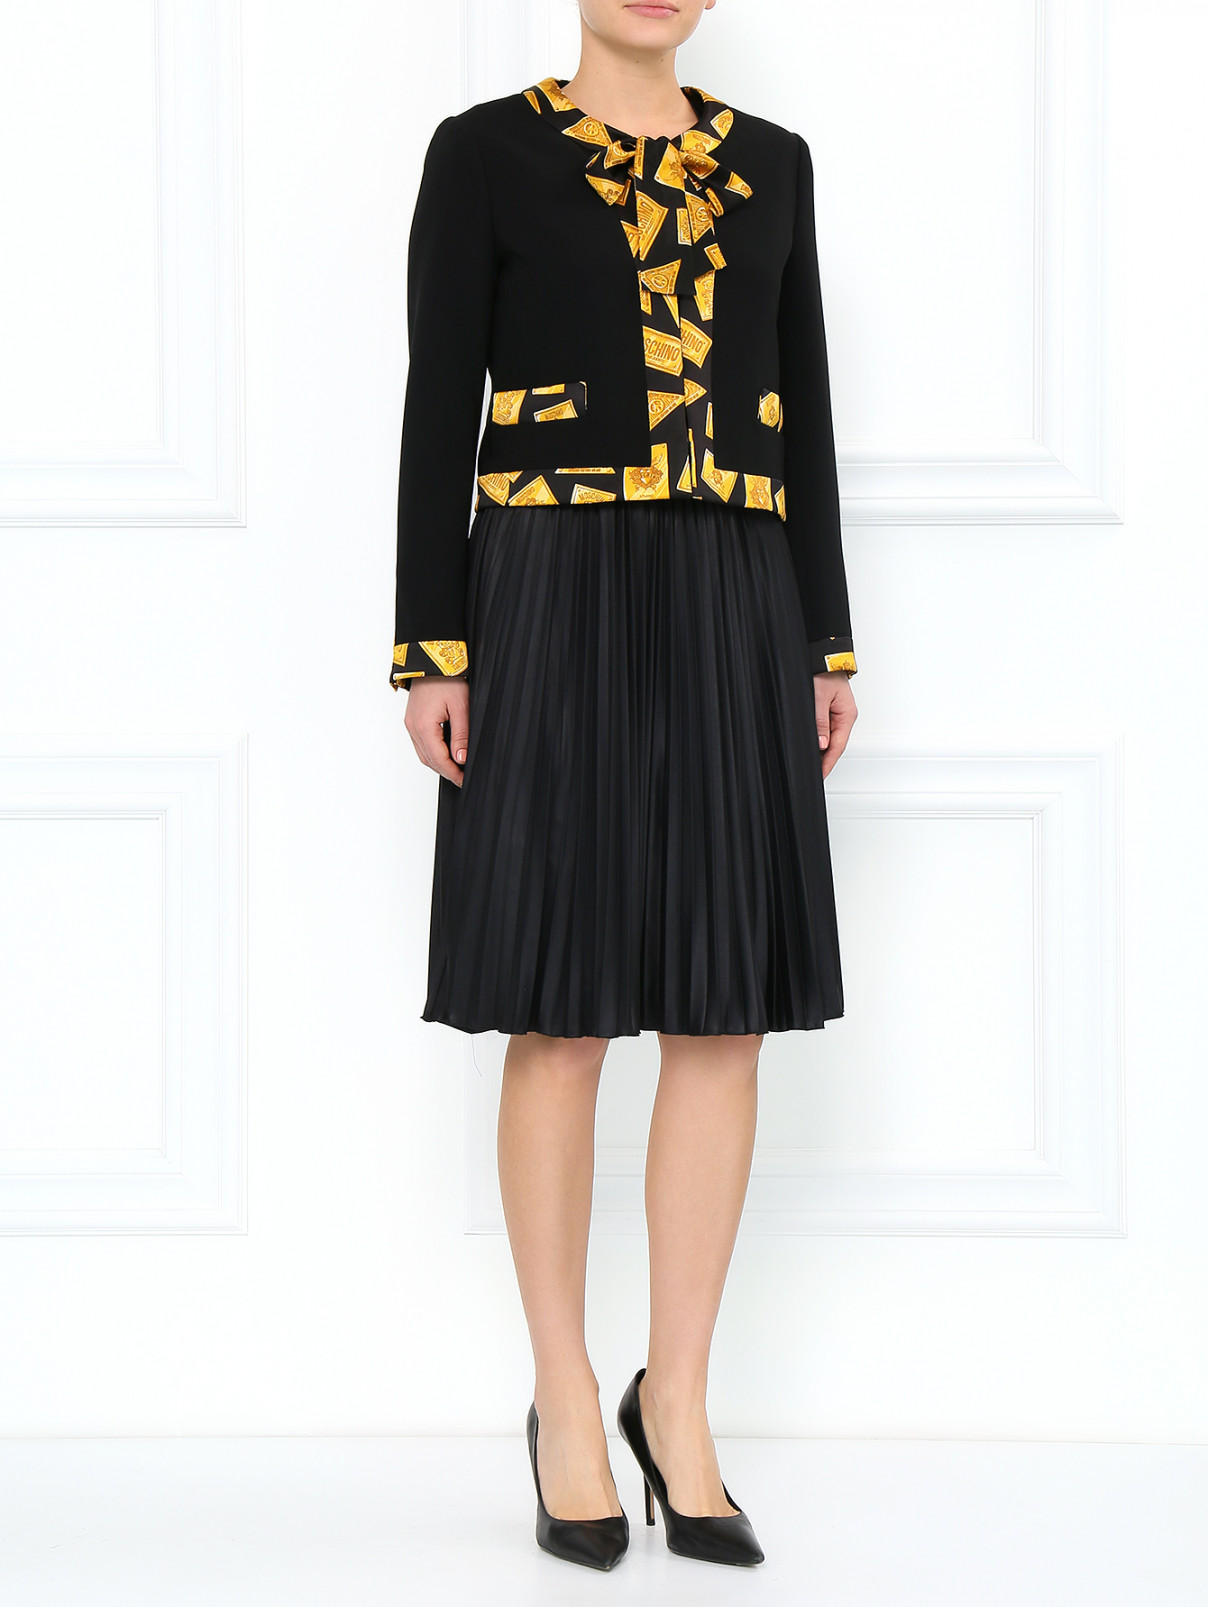 Жакет с контрастной отделкой из шелка Moschino  –  Модель Общий вид  – Цвет:  Черный